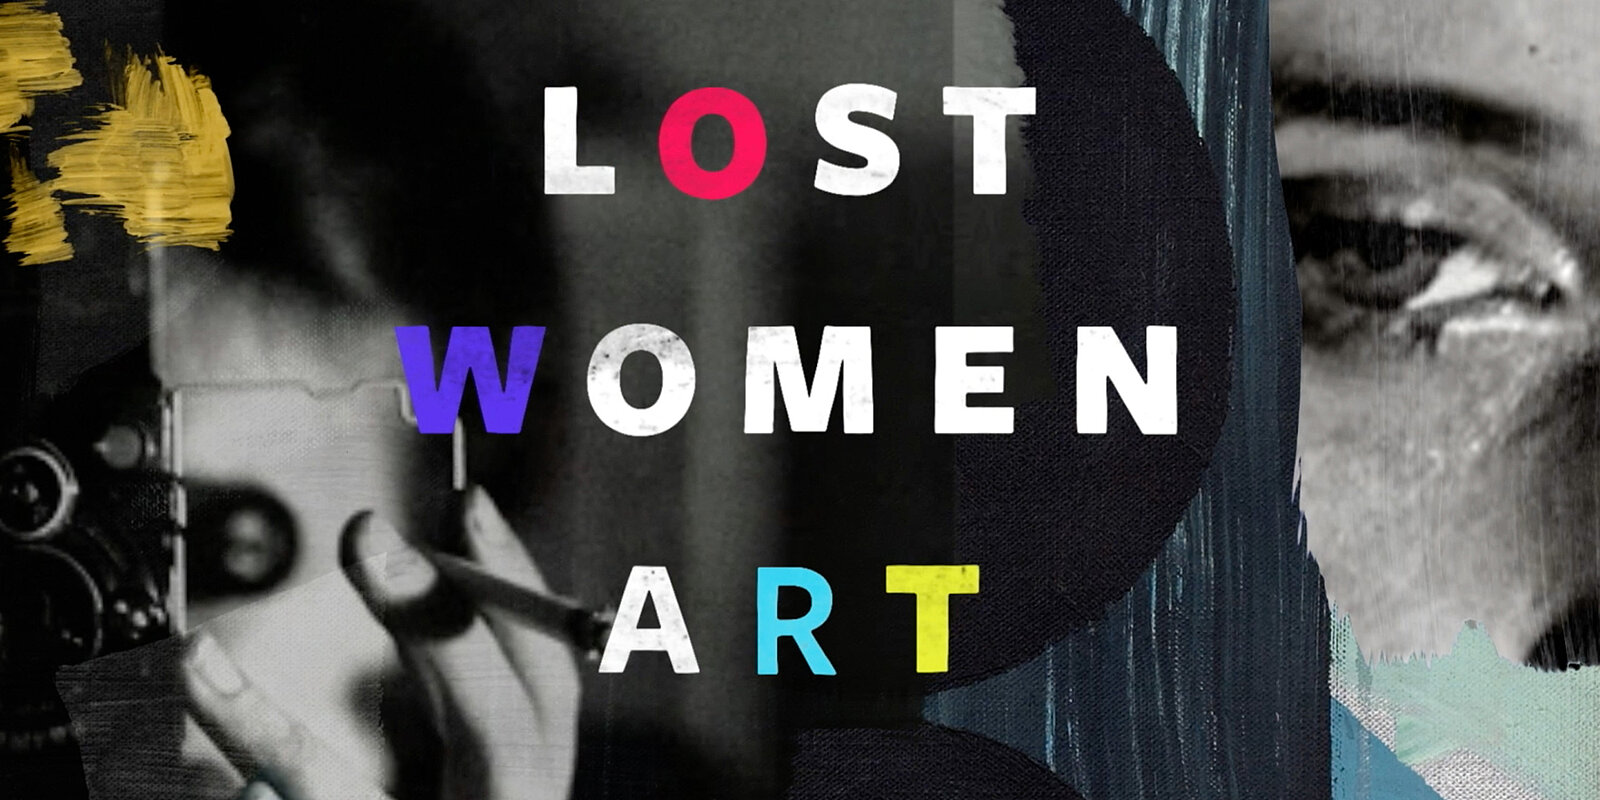 Ilse Bing is featured in the documentory LOST WOMEN ART on ARTE